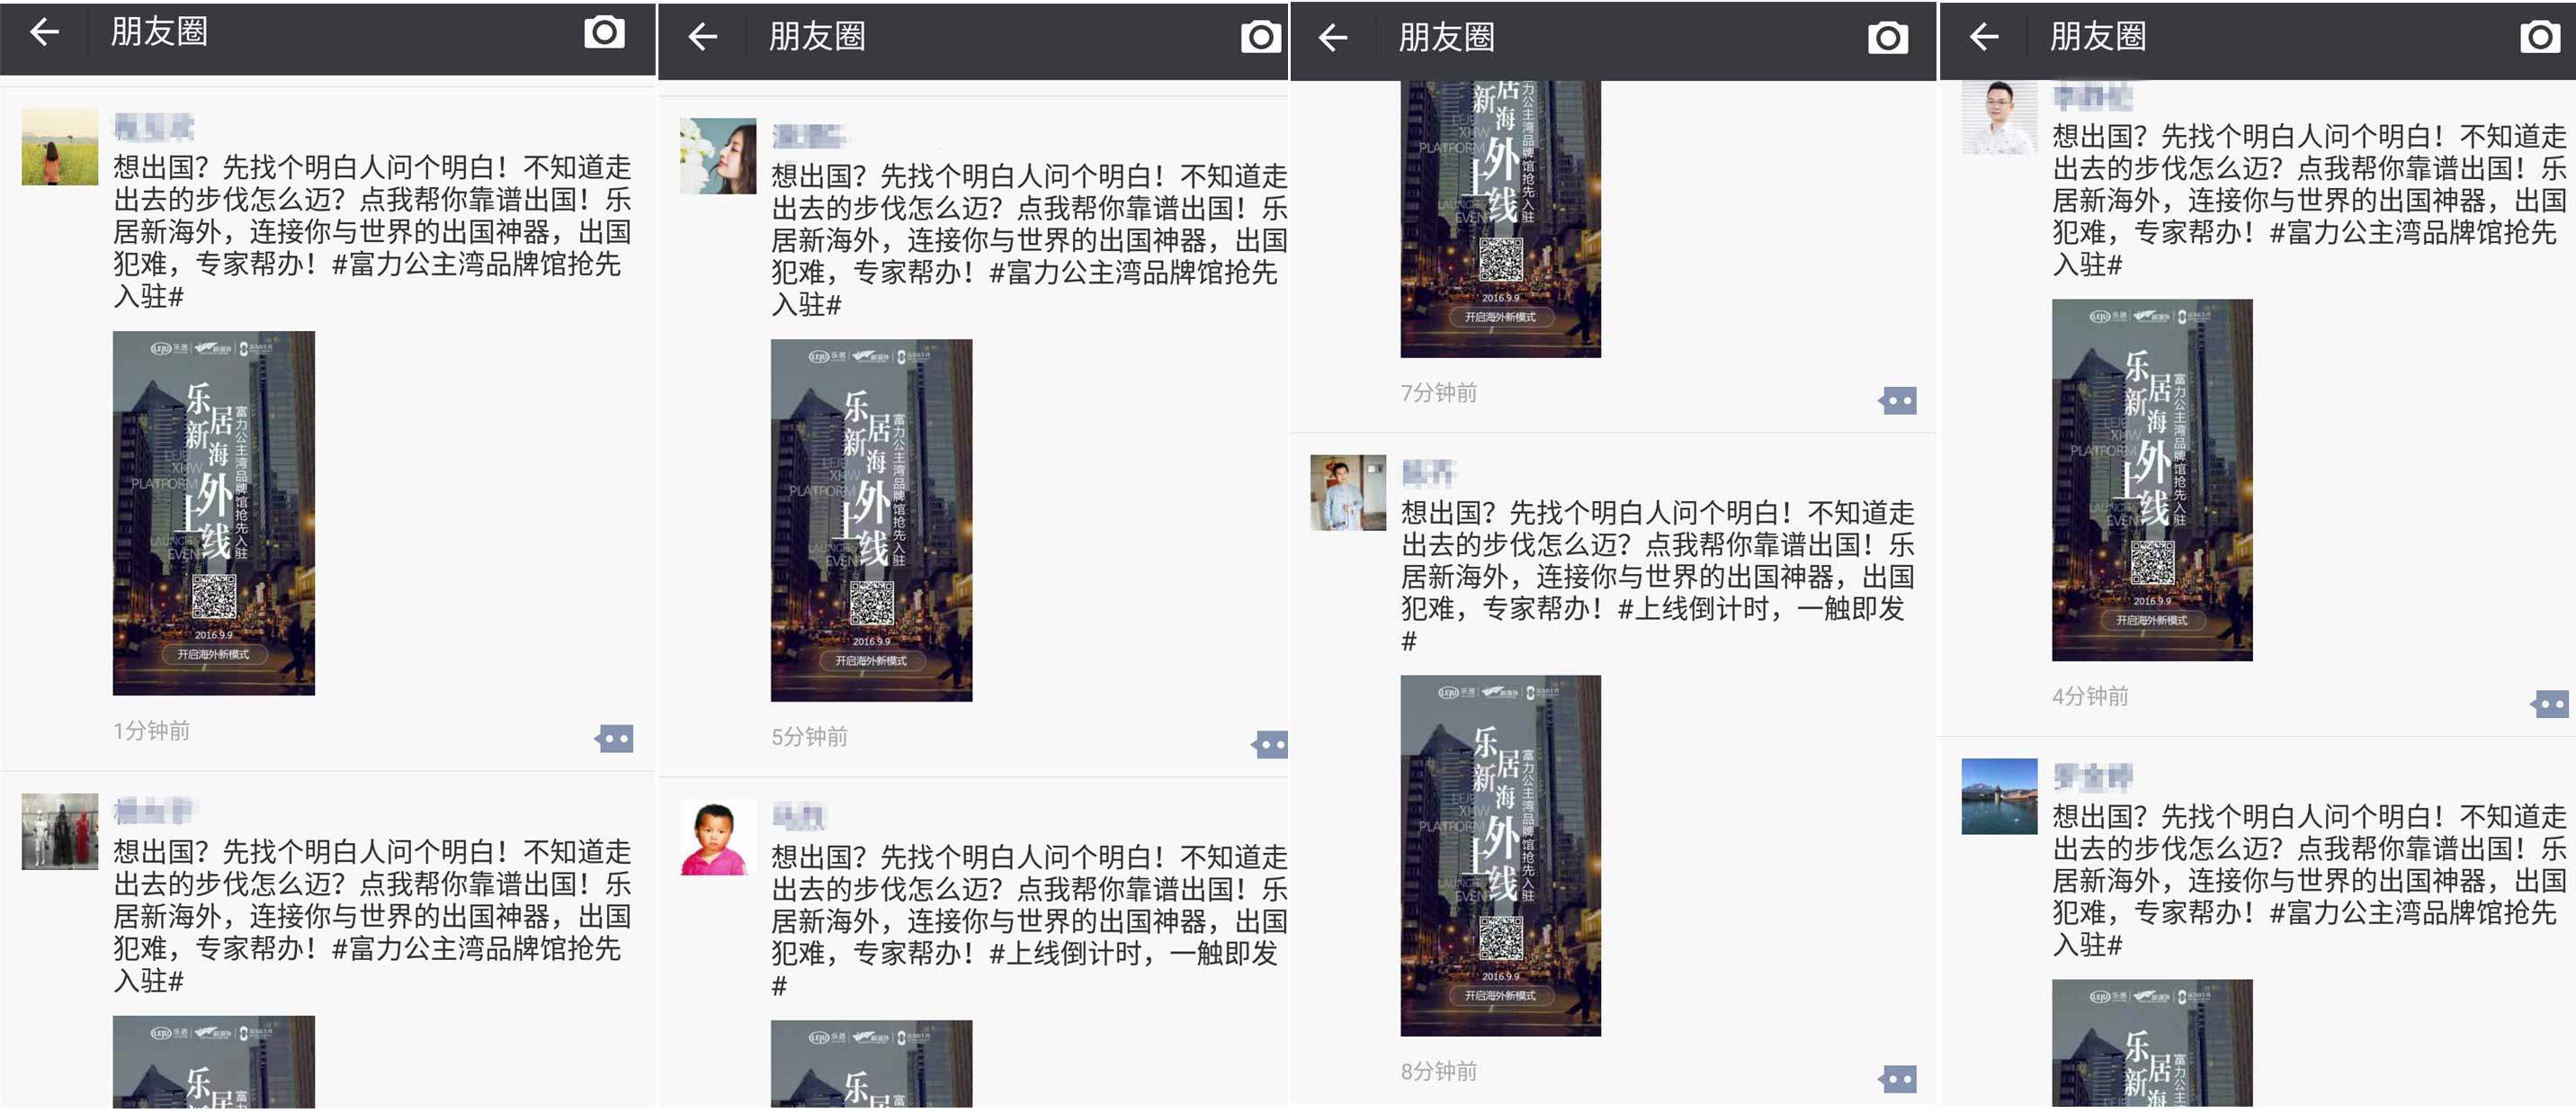 微信朋友圈掀起出国风暴 乐居新海外平台明日